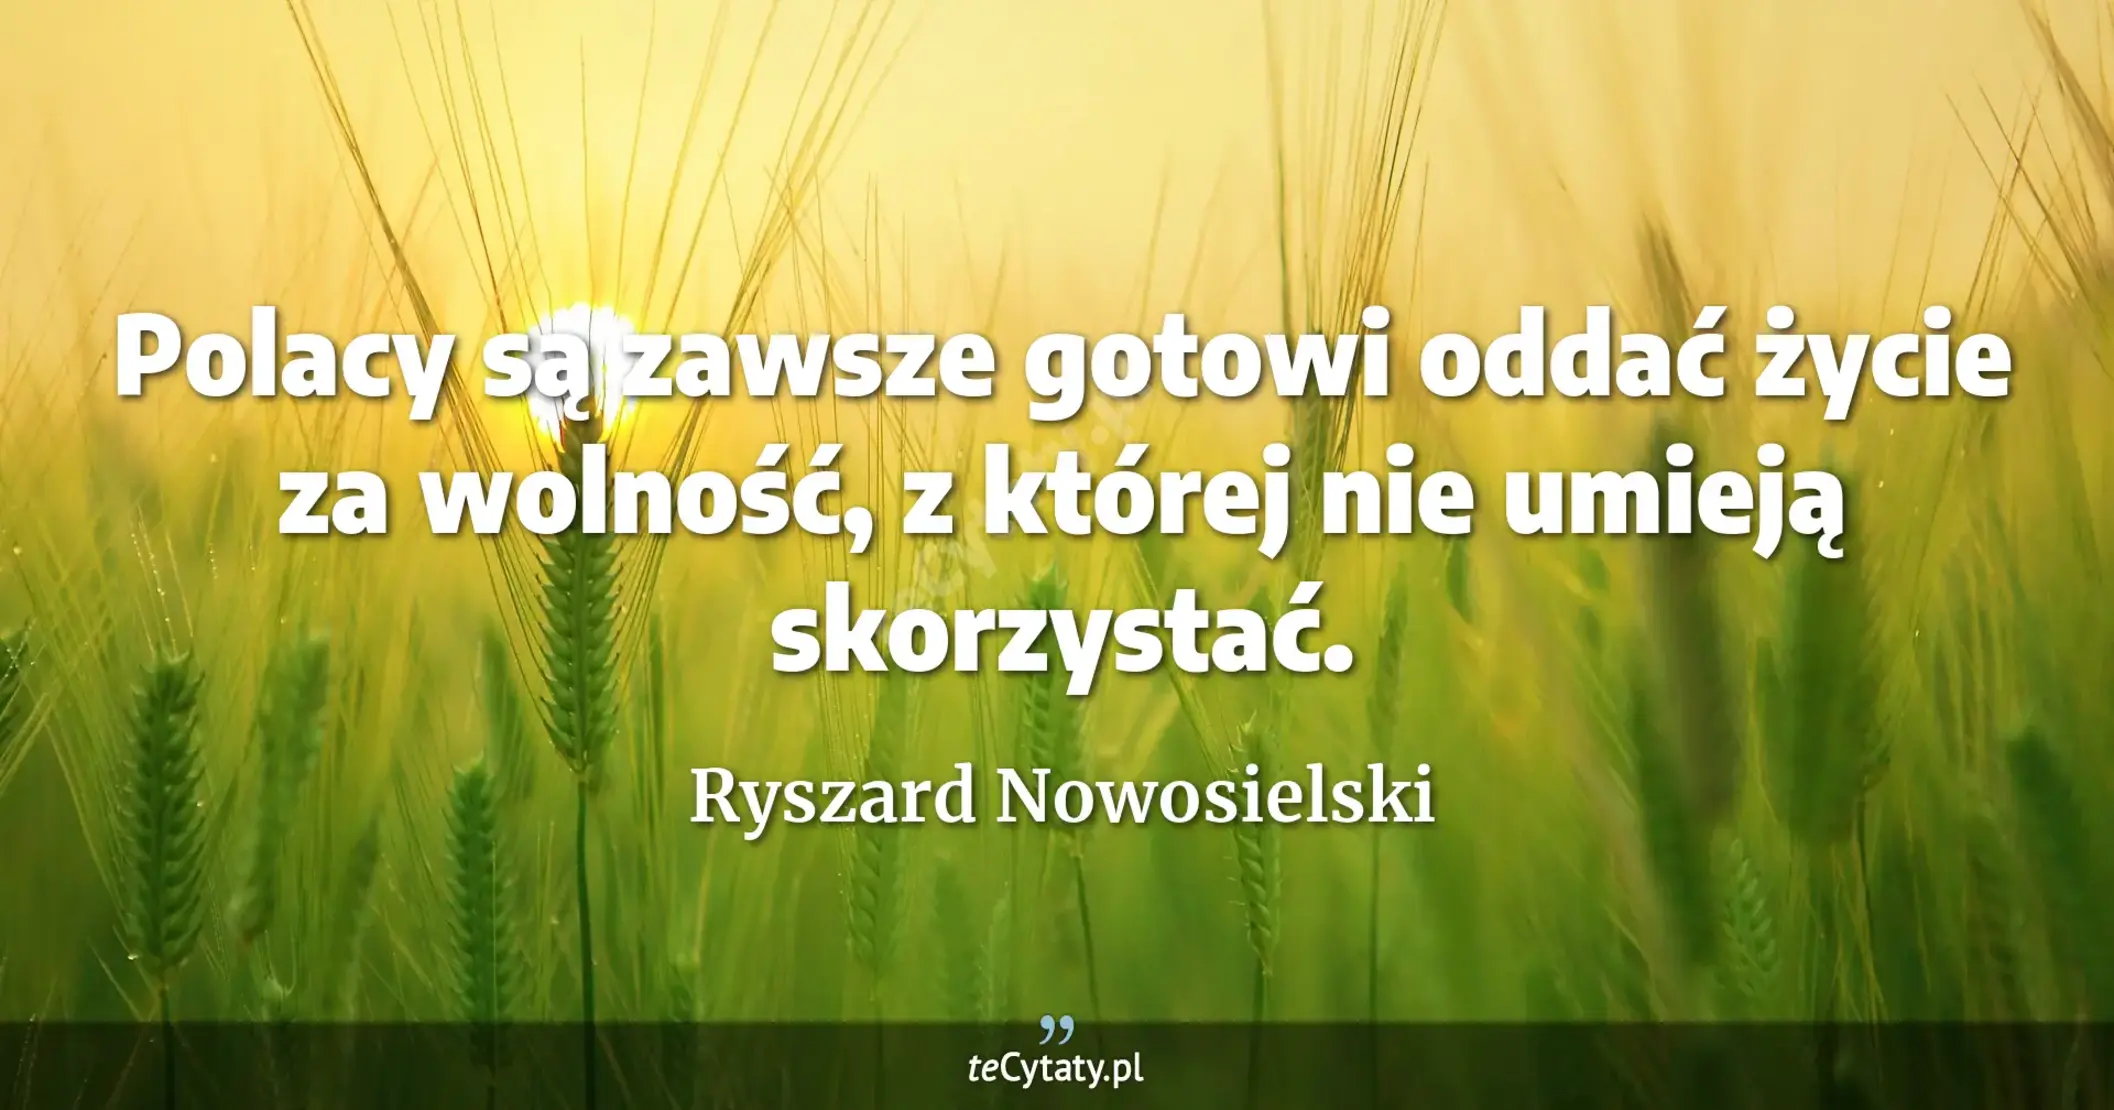 Polacy są zawsze gotowi oddać życie za wolność, z której nie umieją skorzystać. - Ryszard Nowosielski